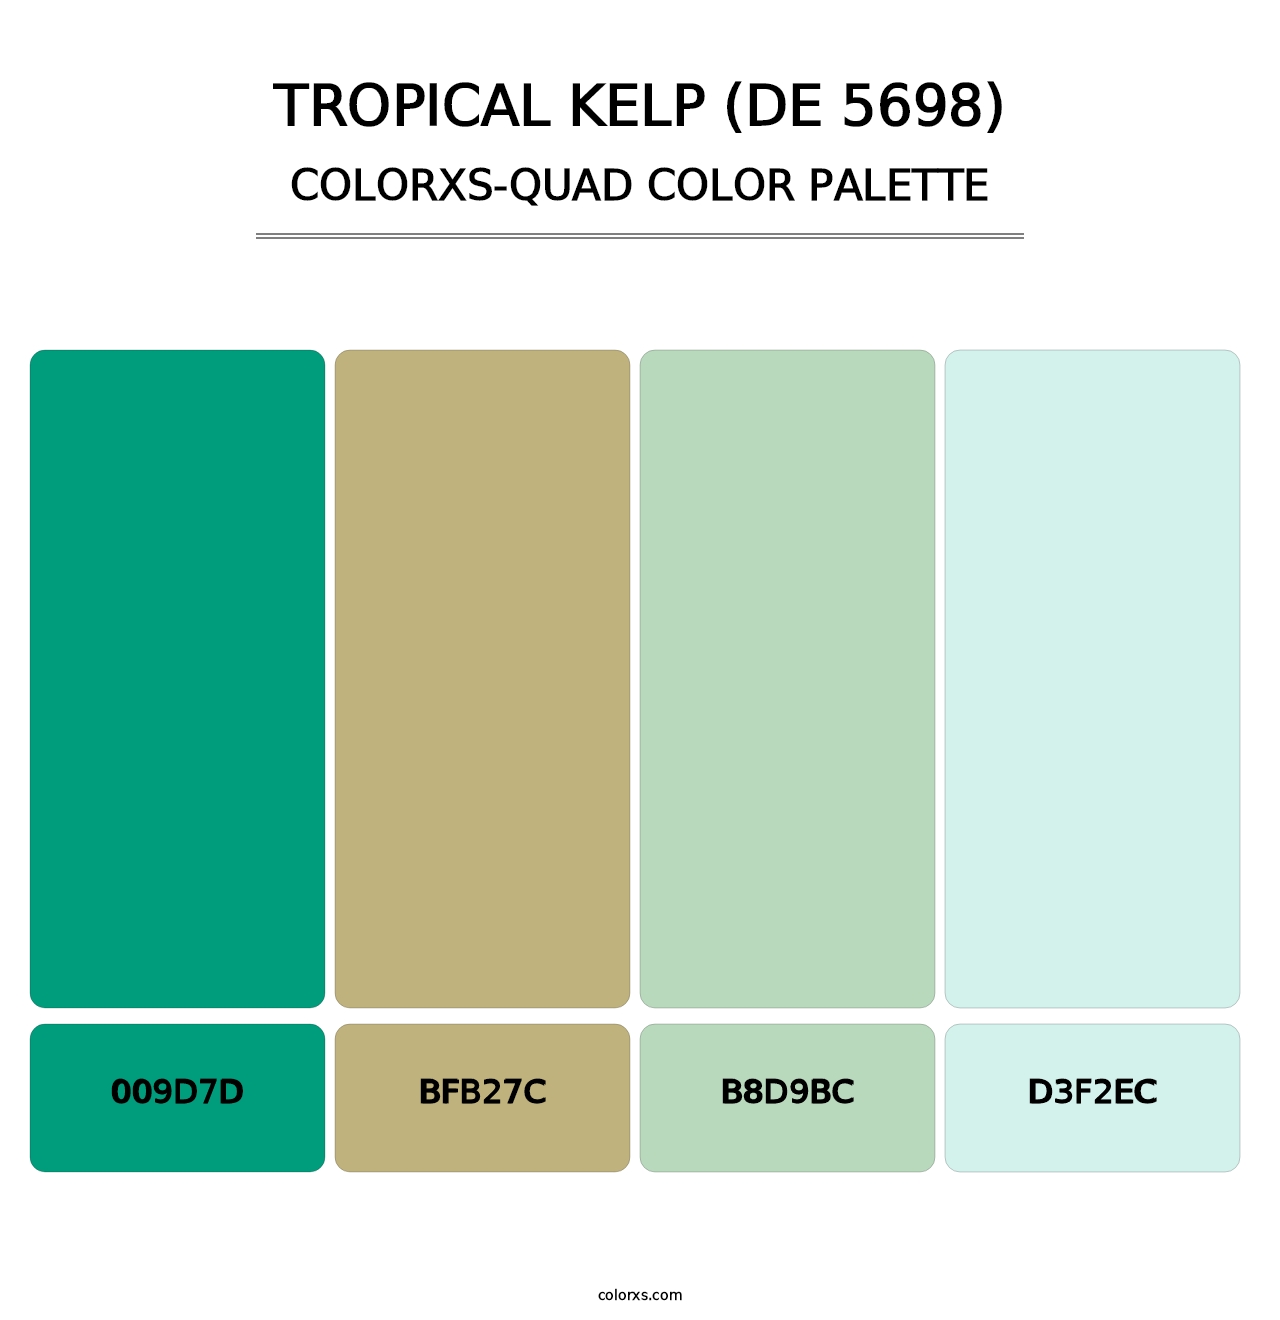 Tropical Kelp (DE 5698) - Colorxs Quad Palette